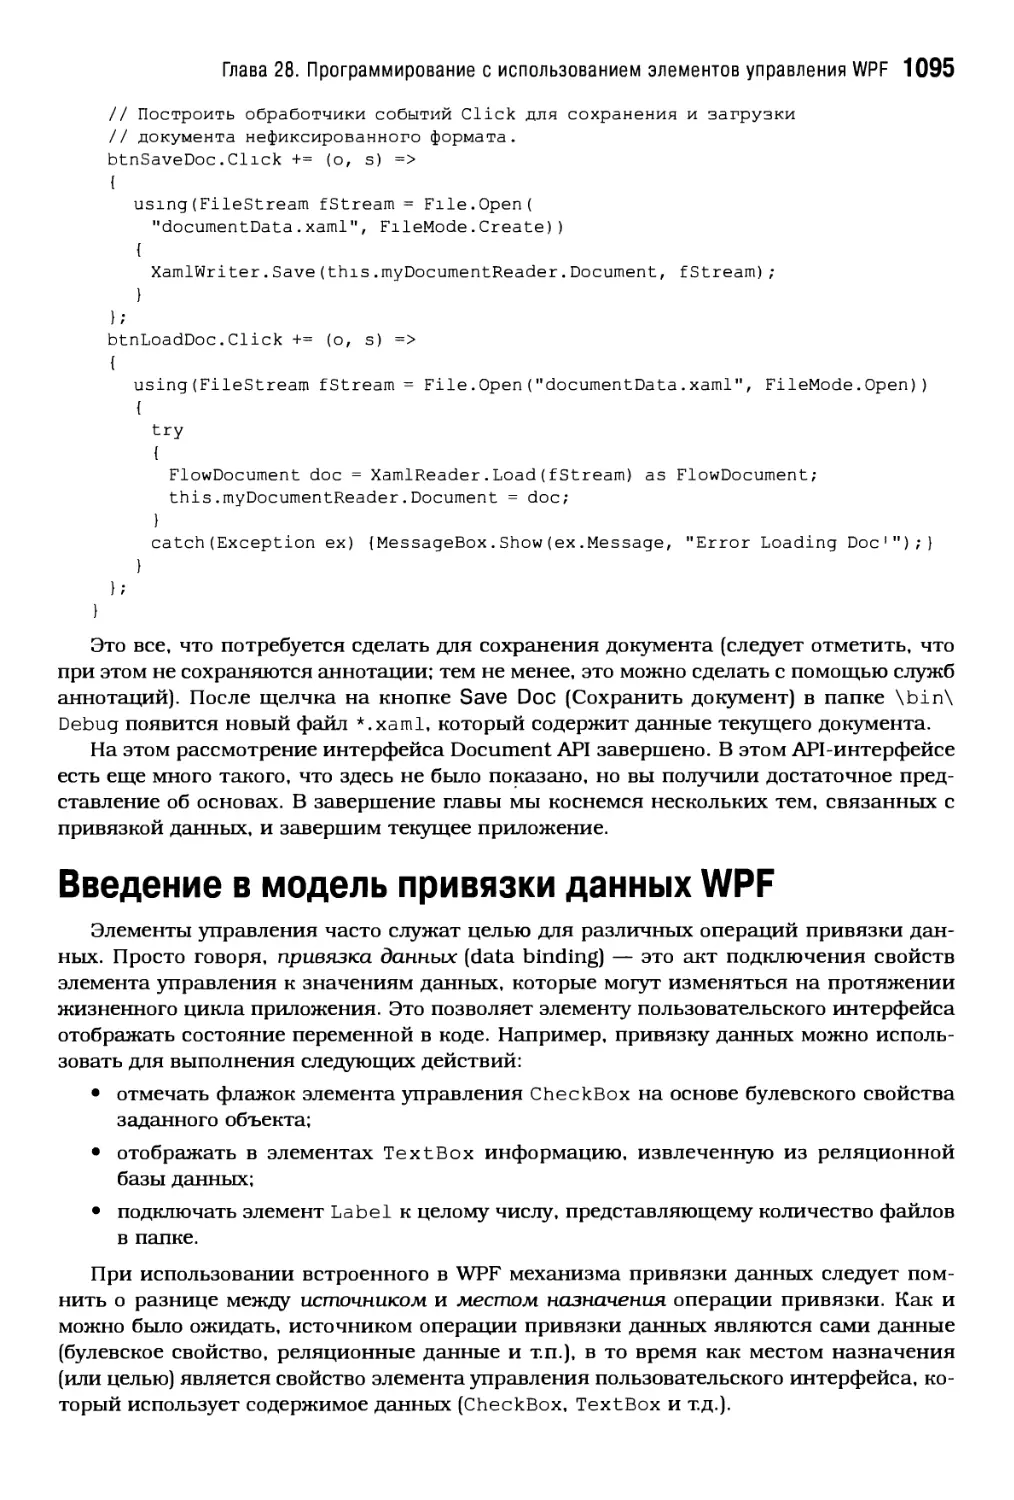 Введение в модель привязки данных WPF